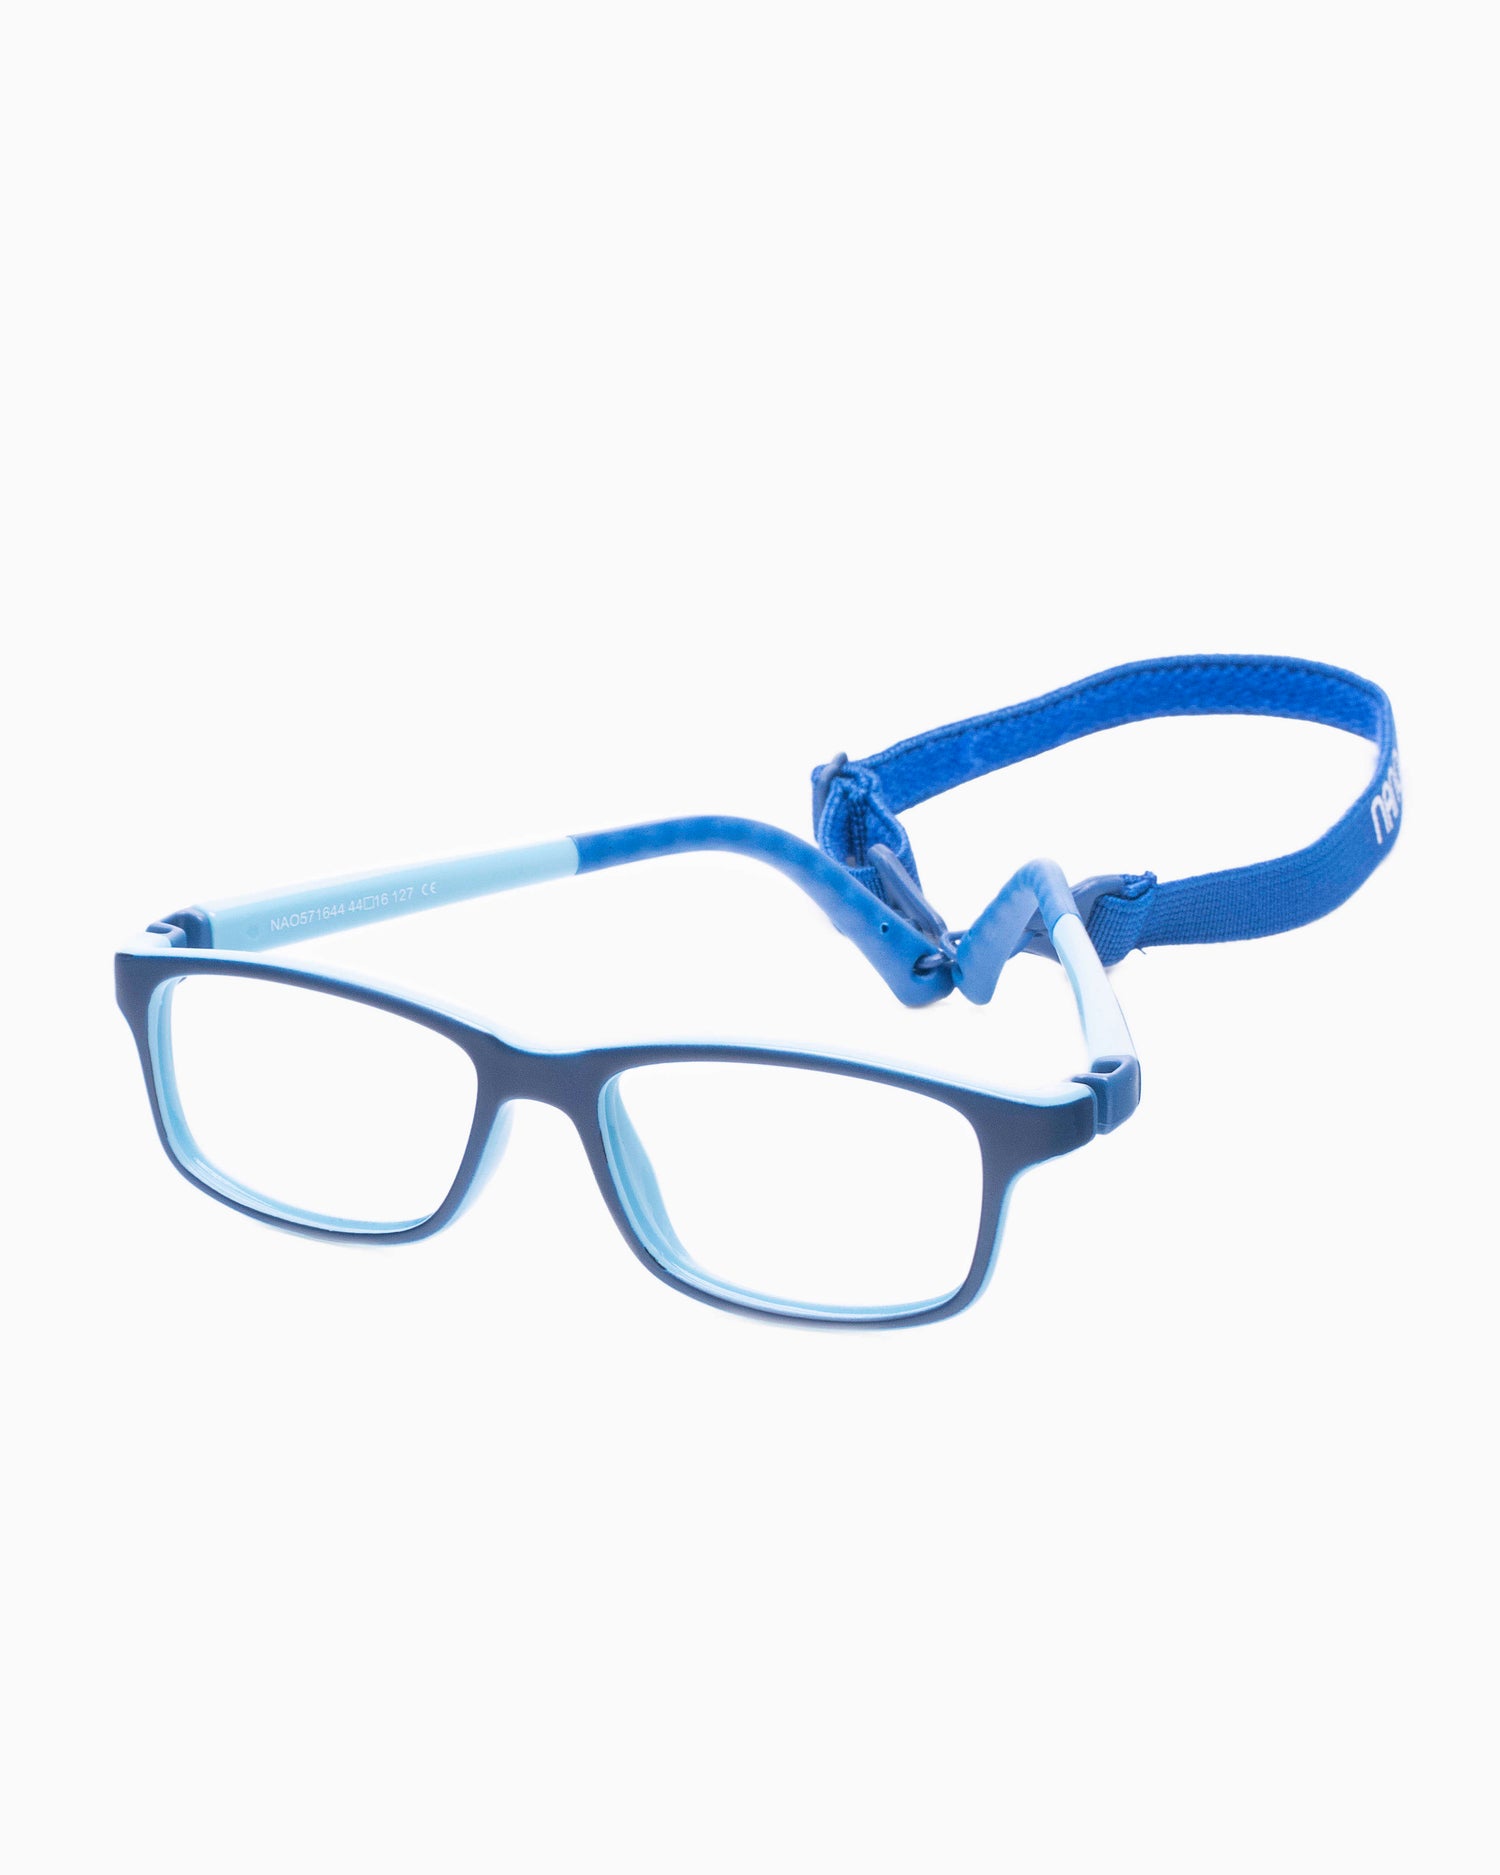 Nanovista Kids - CREW - BLUEBLUE | Bar à lunettes:  Marie-Sophie Dion